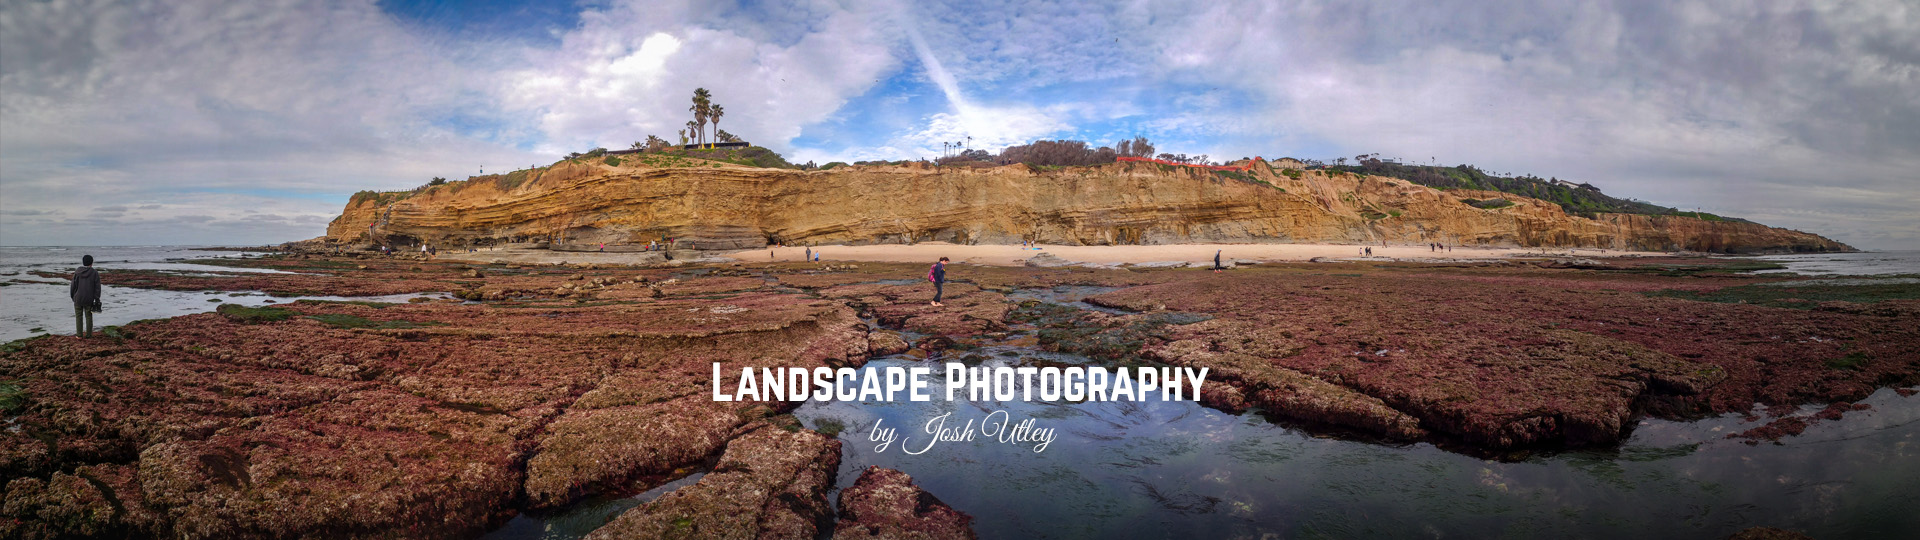 Landscape Photography by Josh Utley